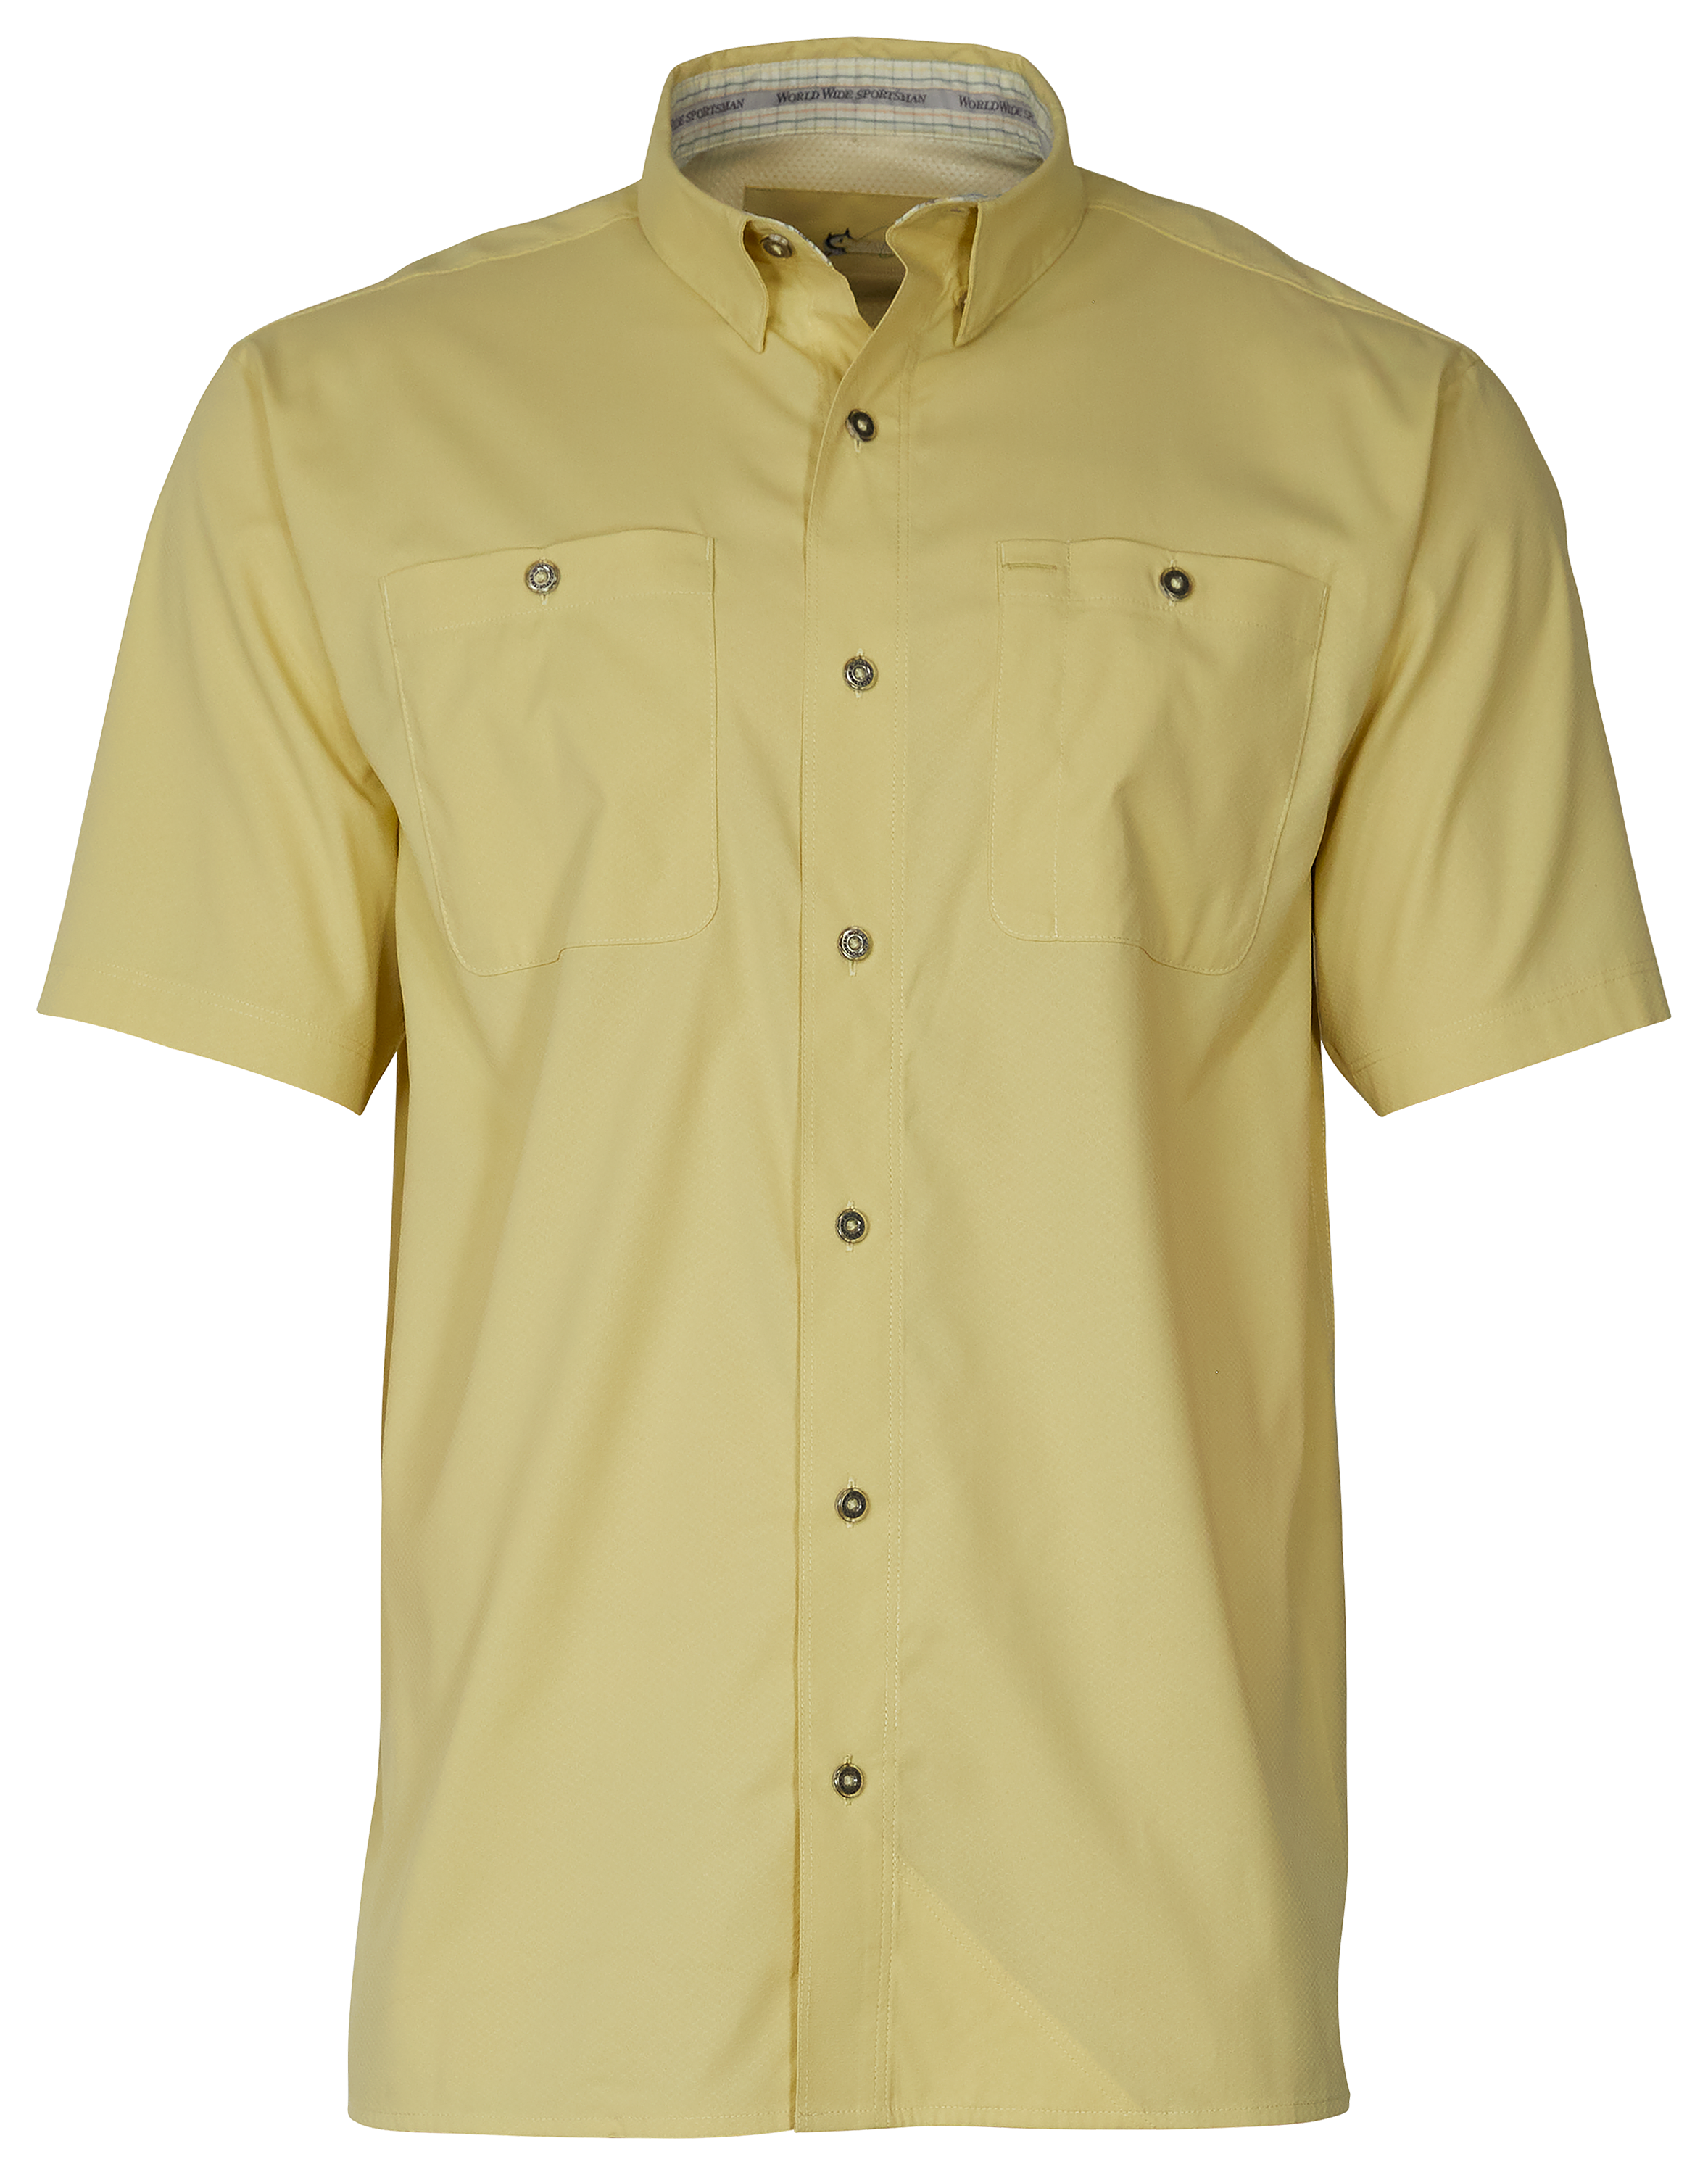 World Wide Sportsman Ultimate Angler Solid Short-Sleeve Shirt for Men - Golden Mist - 3XL